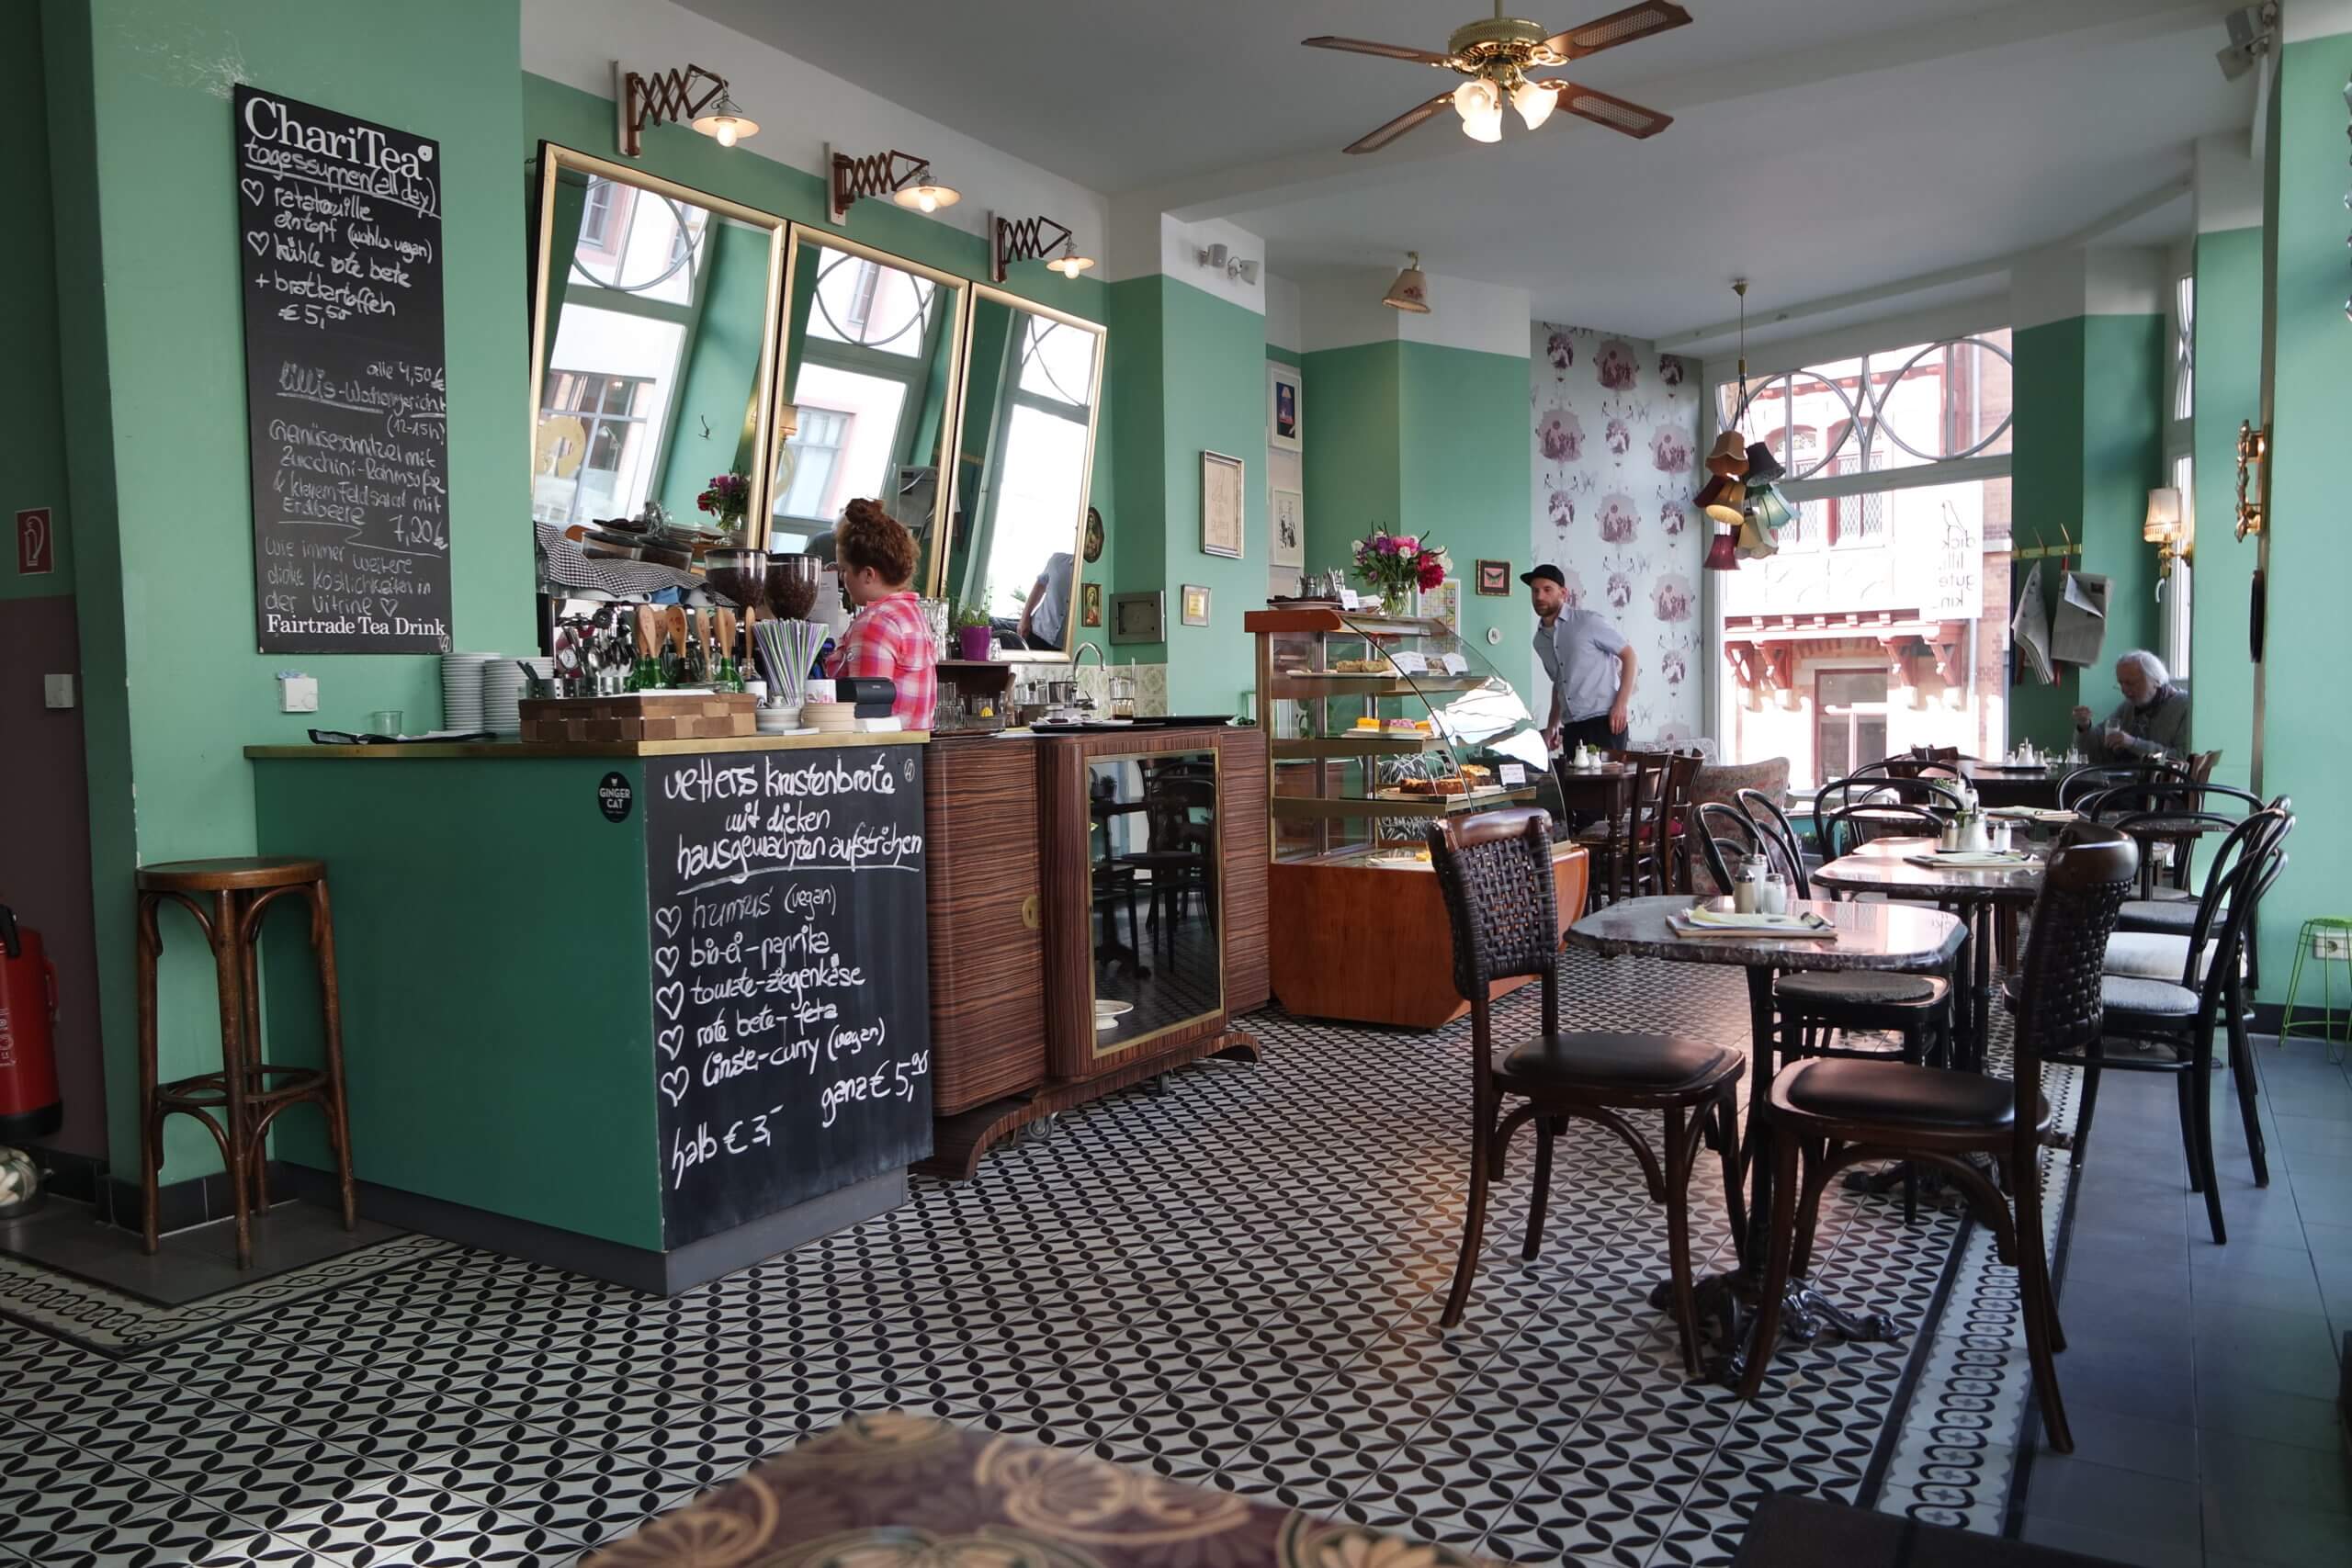 Einzigartig gemütlich, das Café "dicke lilli, gutes Kind", in der Mainzer Altstadt